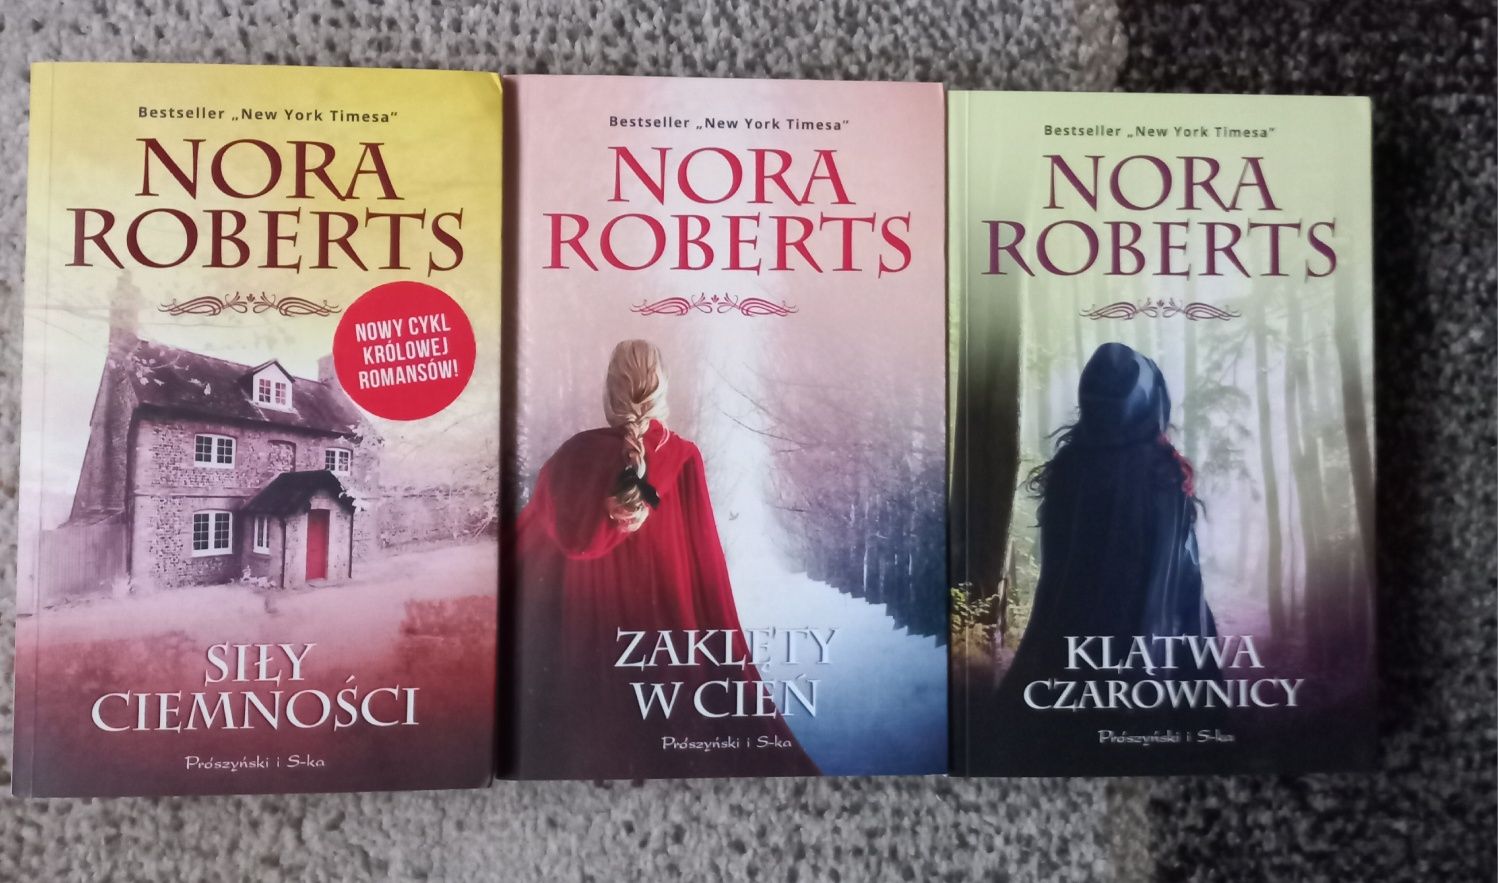 Siły ciemności Zaklęty w cień Klątwa czarownicy Nora Roberts